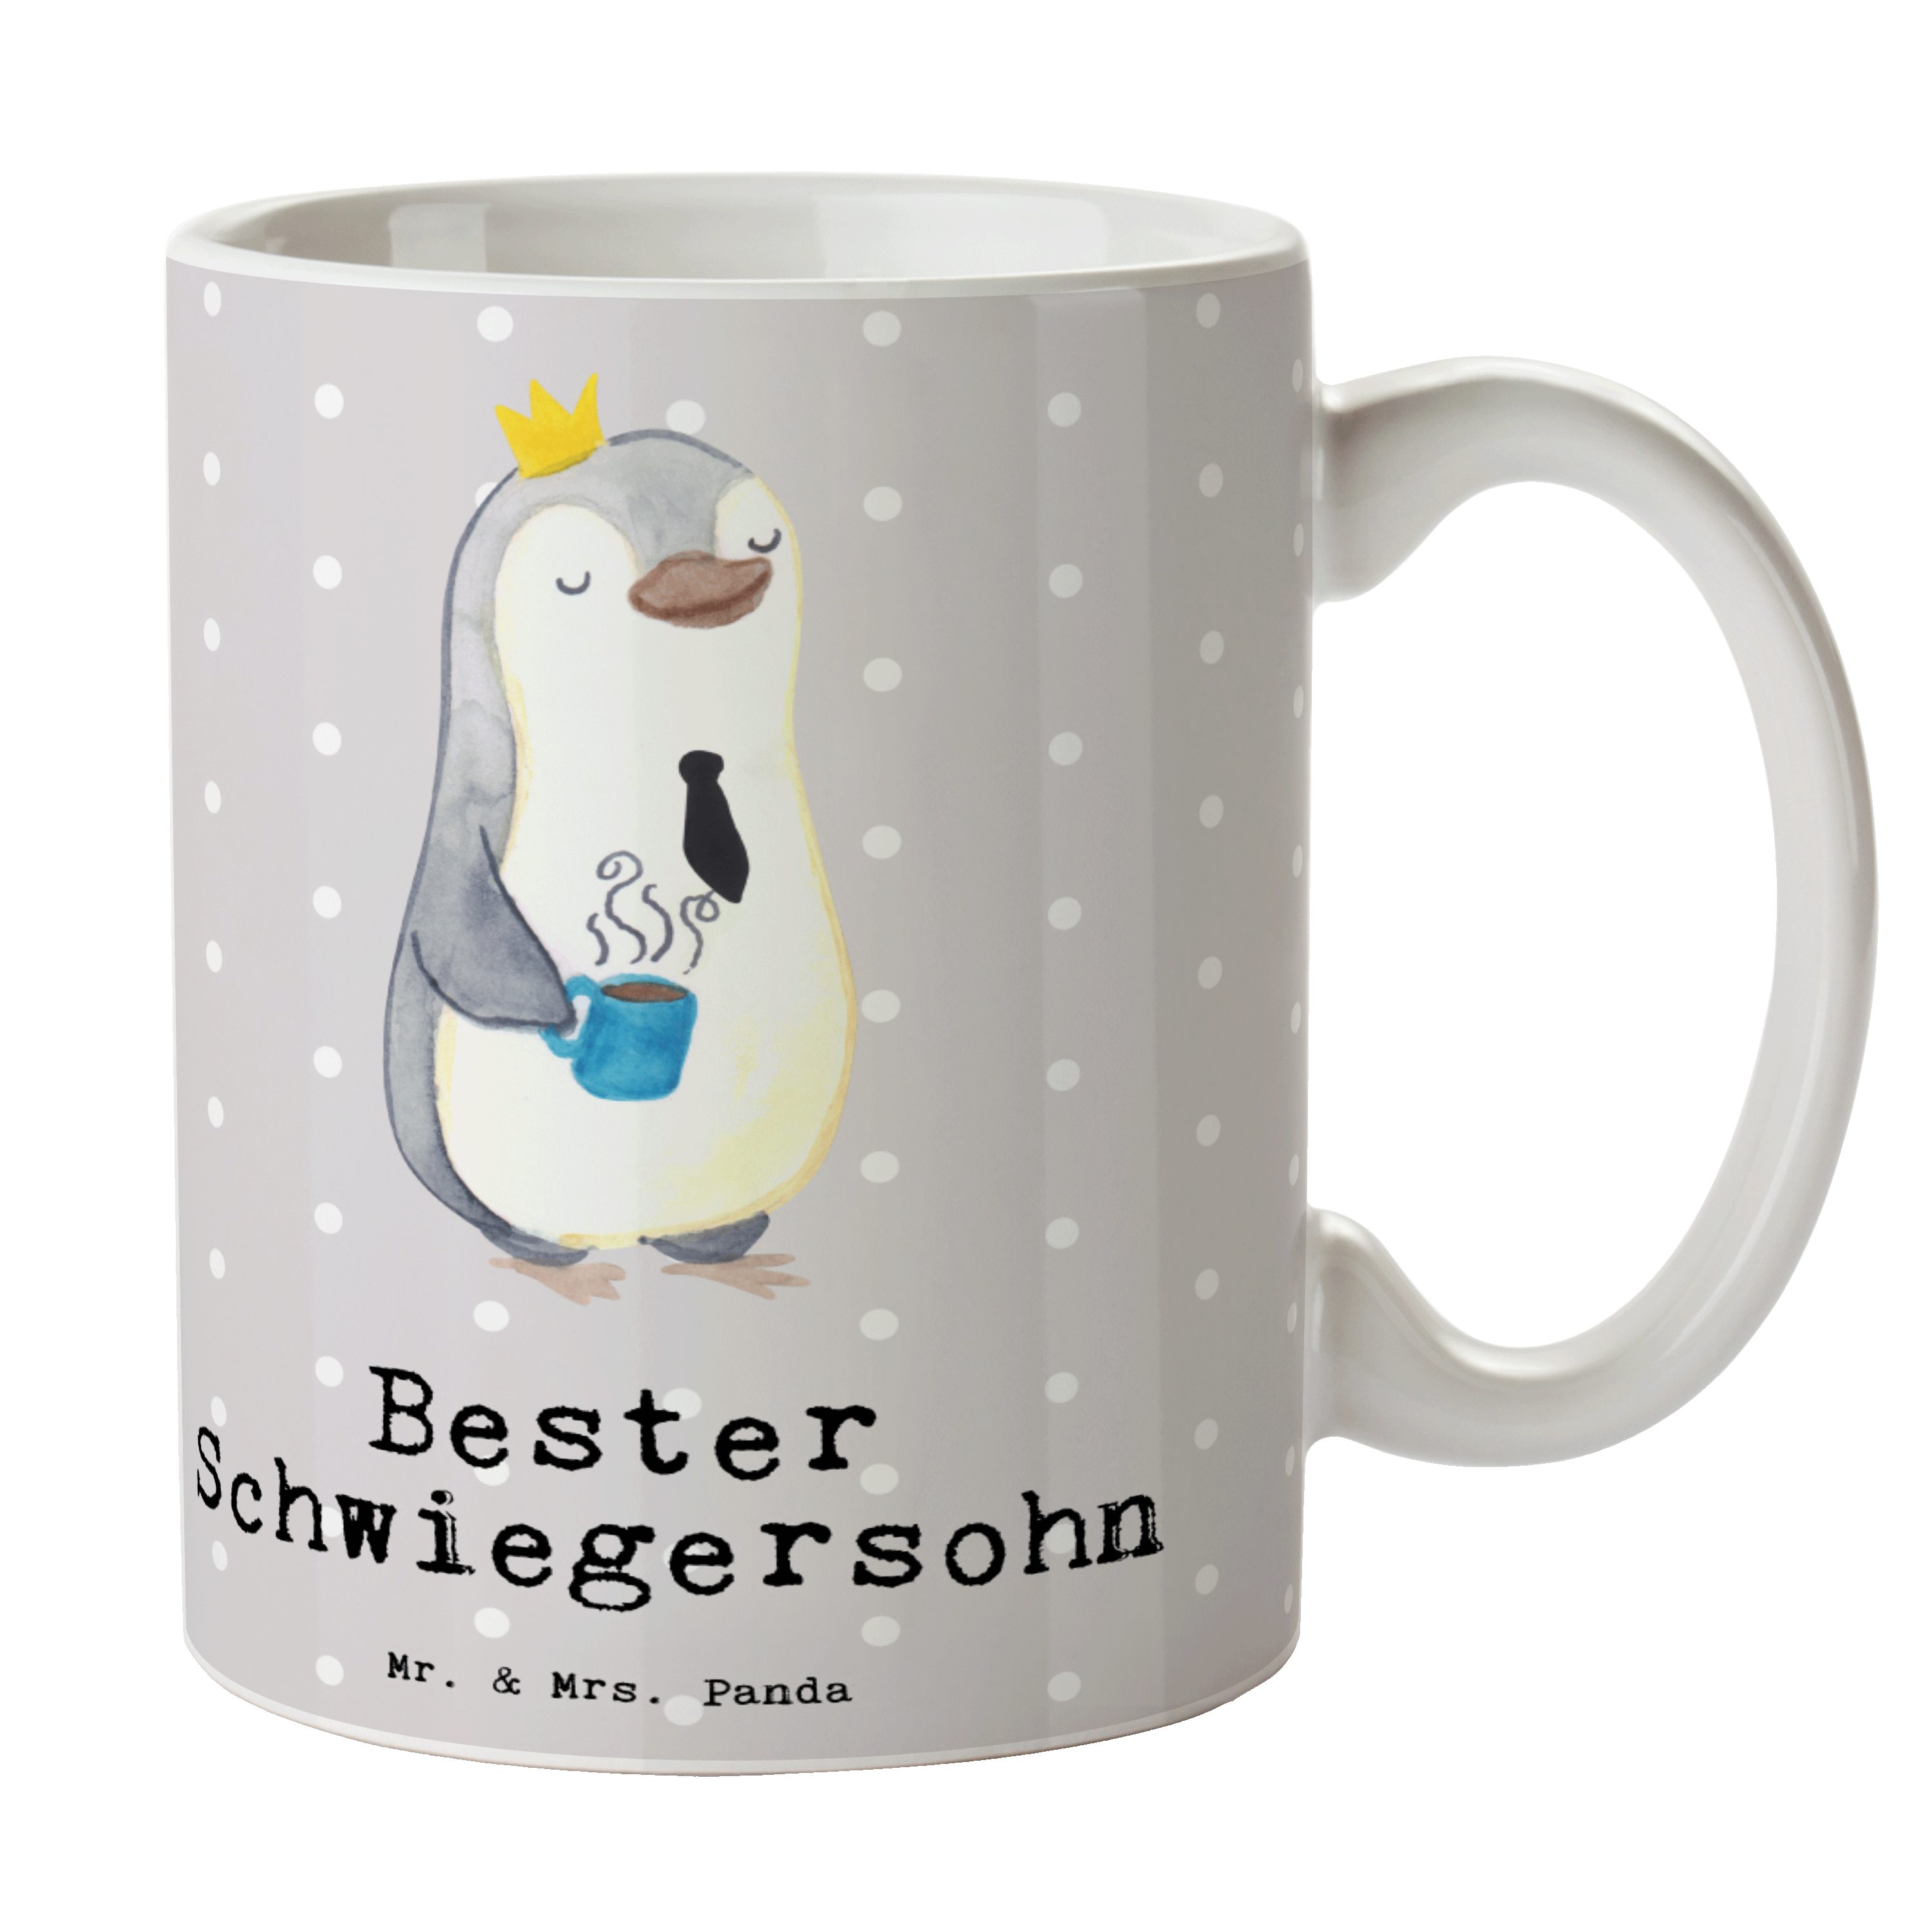 Mr. & Mrs. Panda Tasse Pinguin Bester Schwiegersohn - Grau Pastell - Geschenk, Frühstück, Ka, Keramik